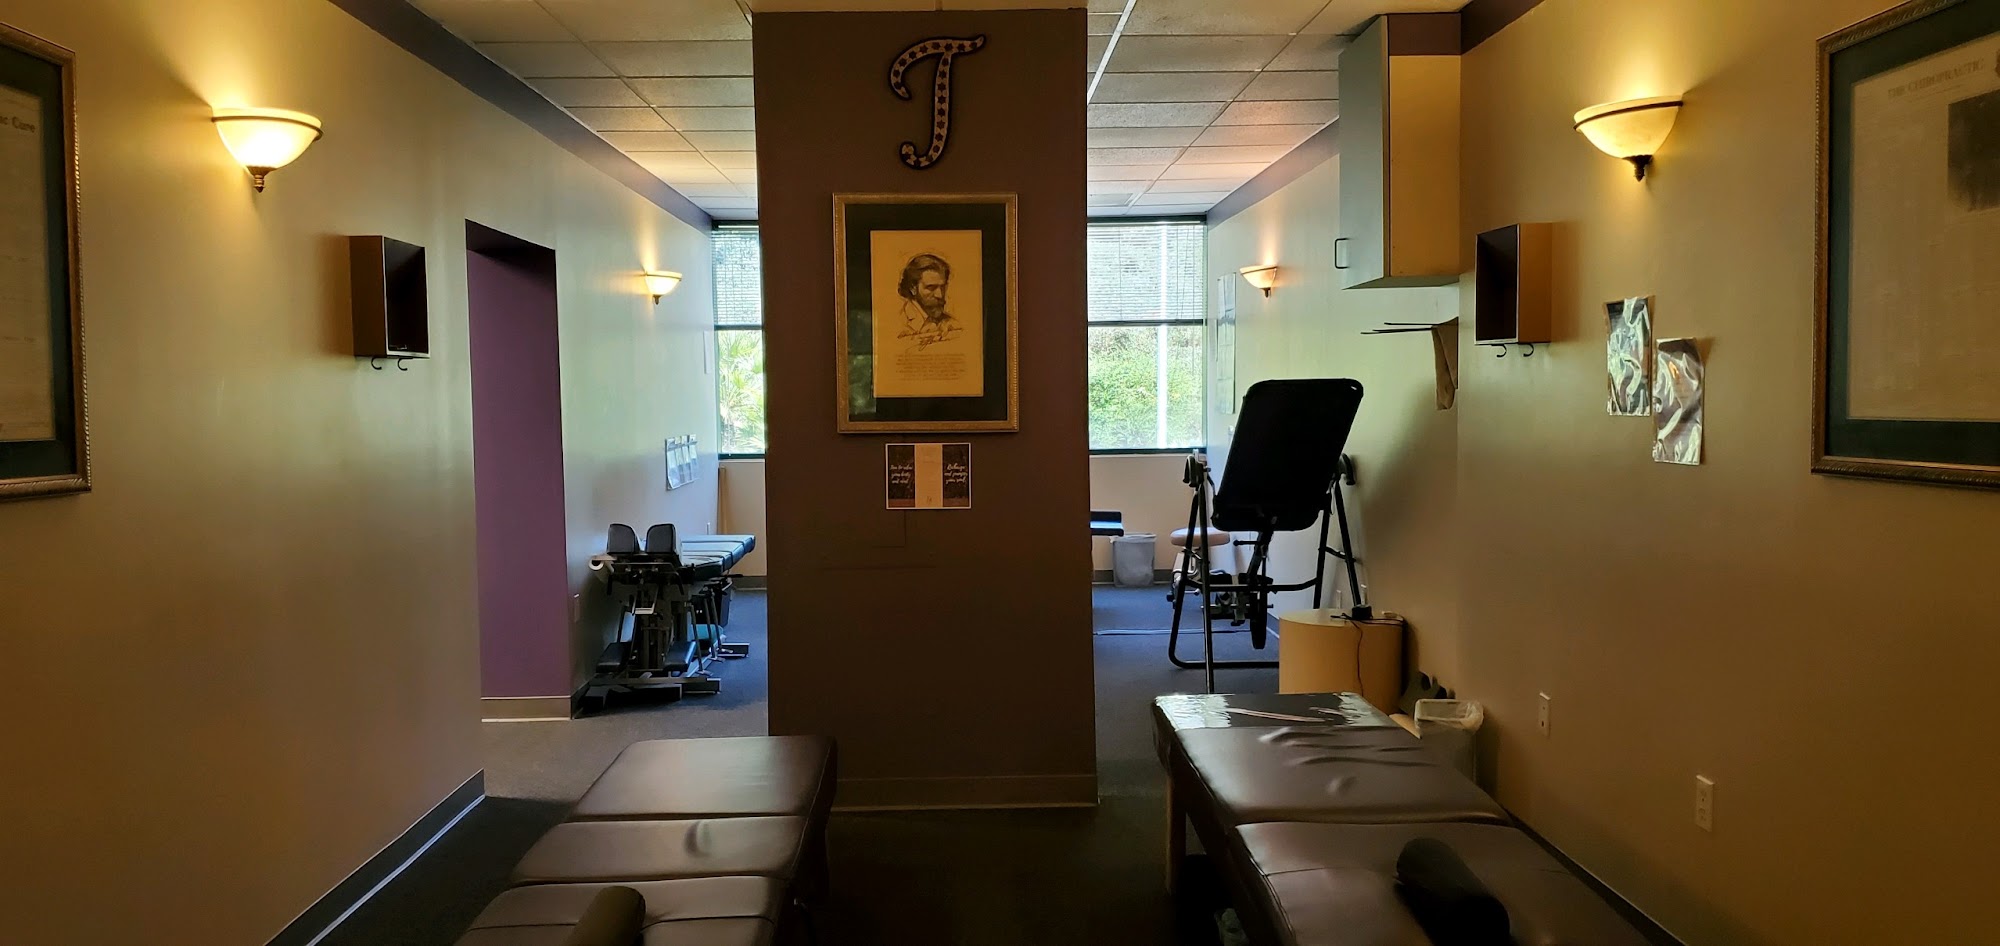 Dr. Turek's Wellness Center